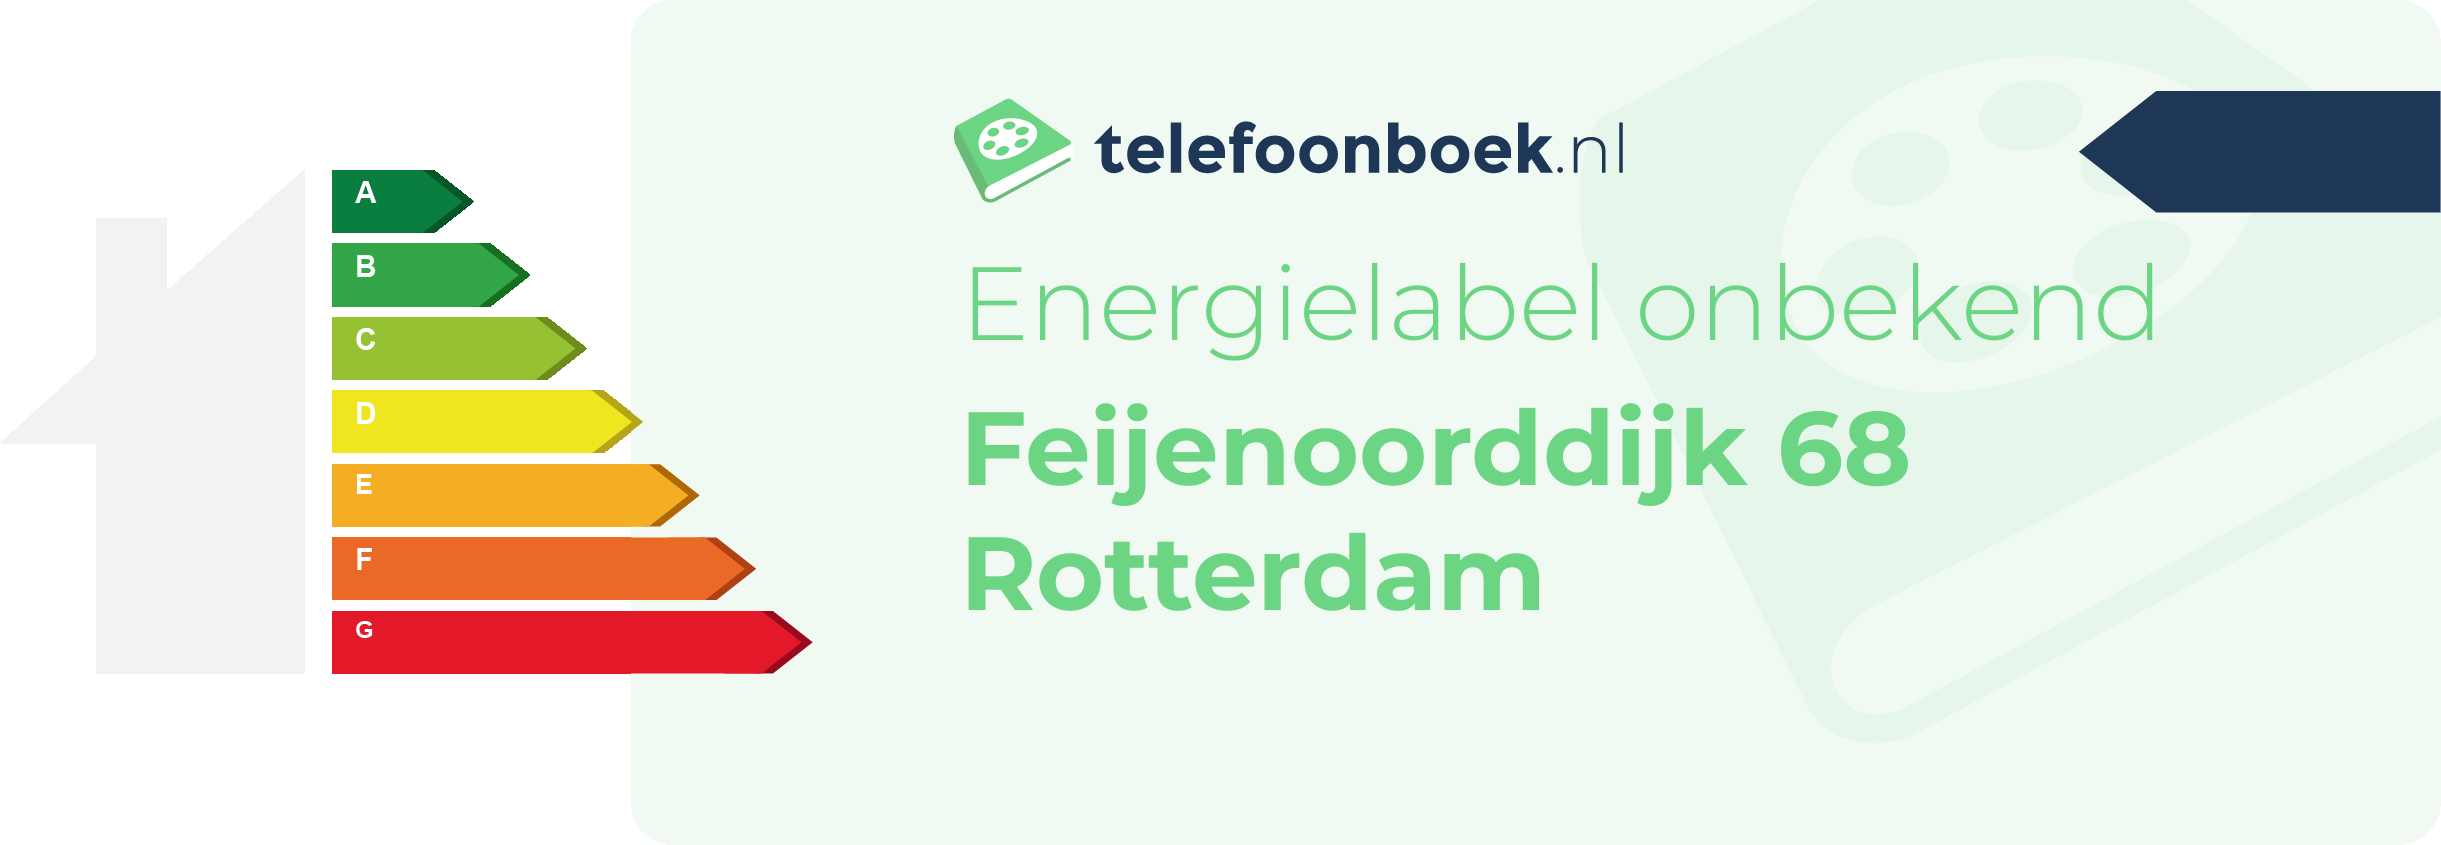 Energielabel Feijenoorddijk 68 Rotterdam